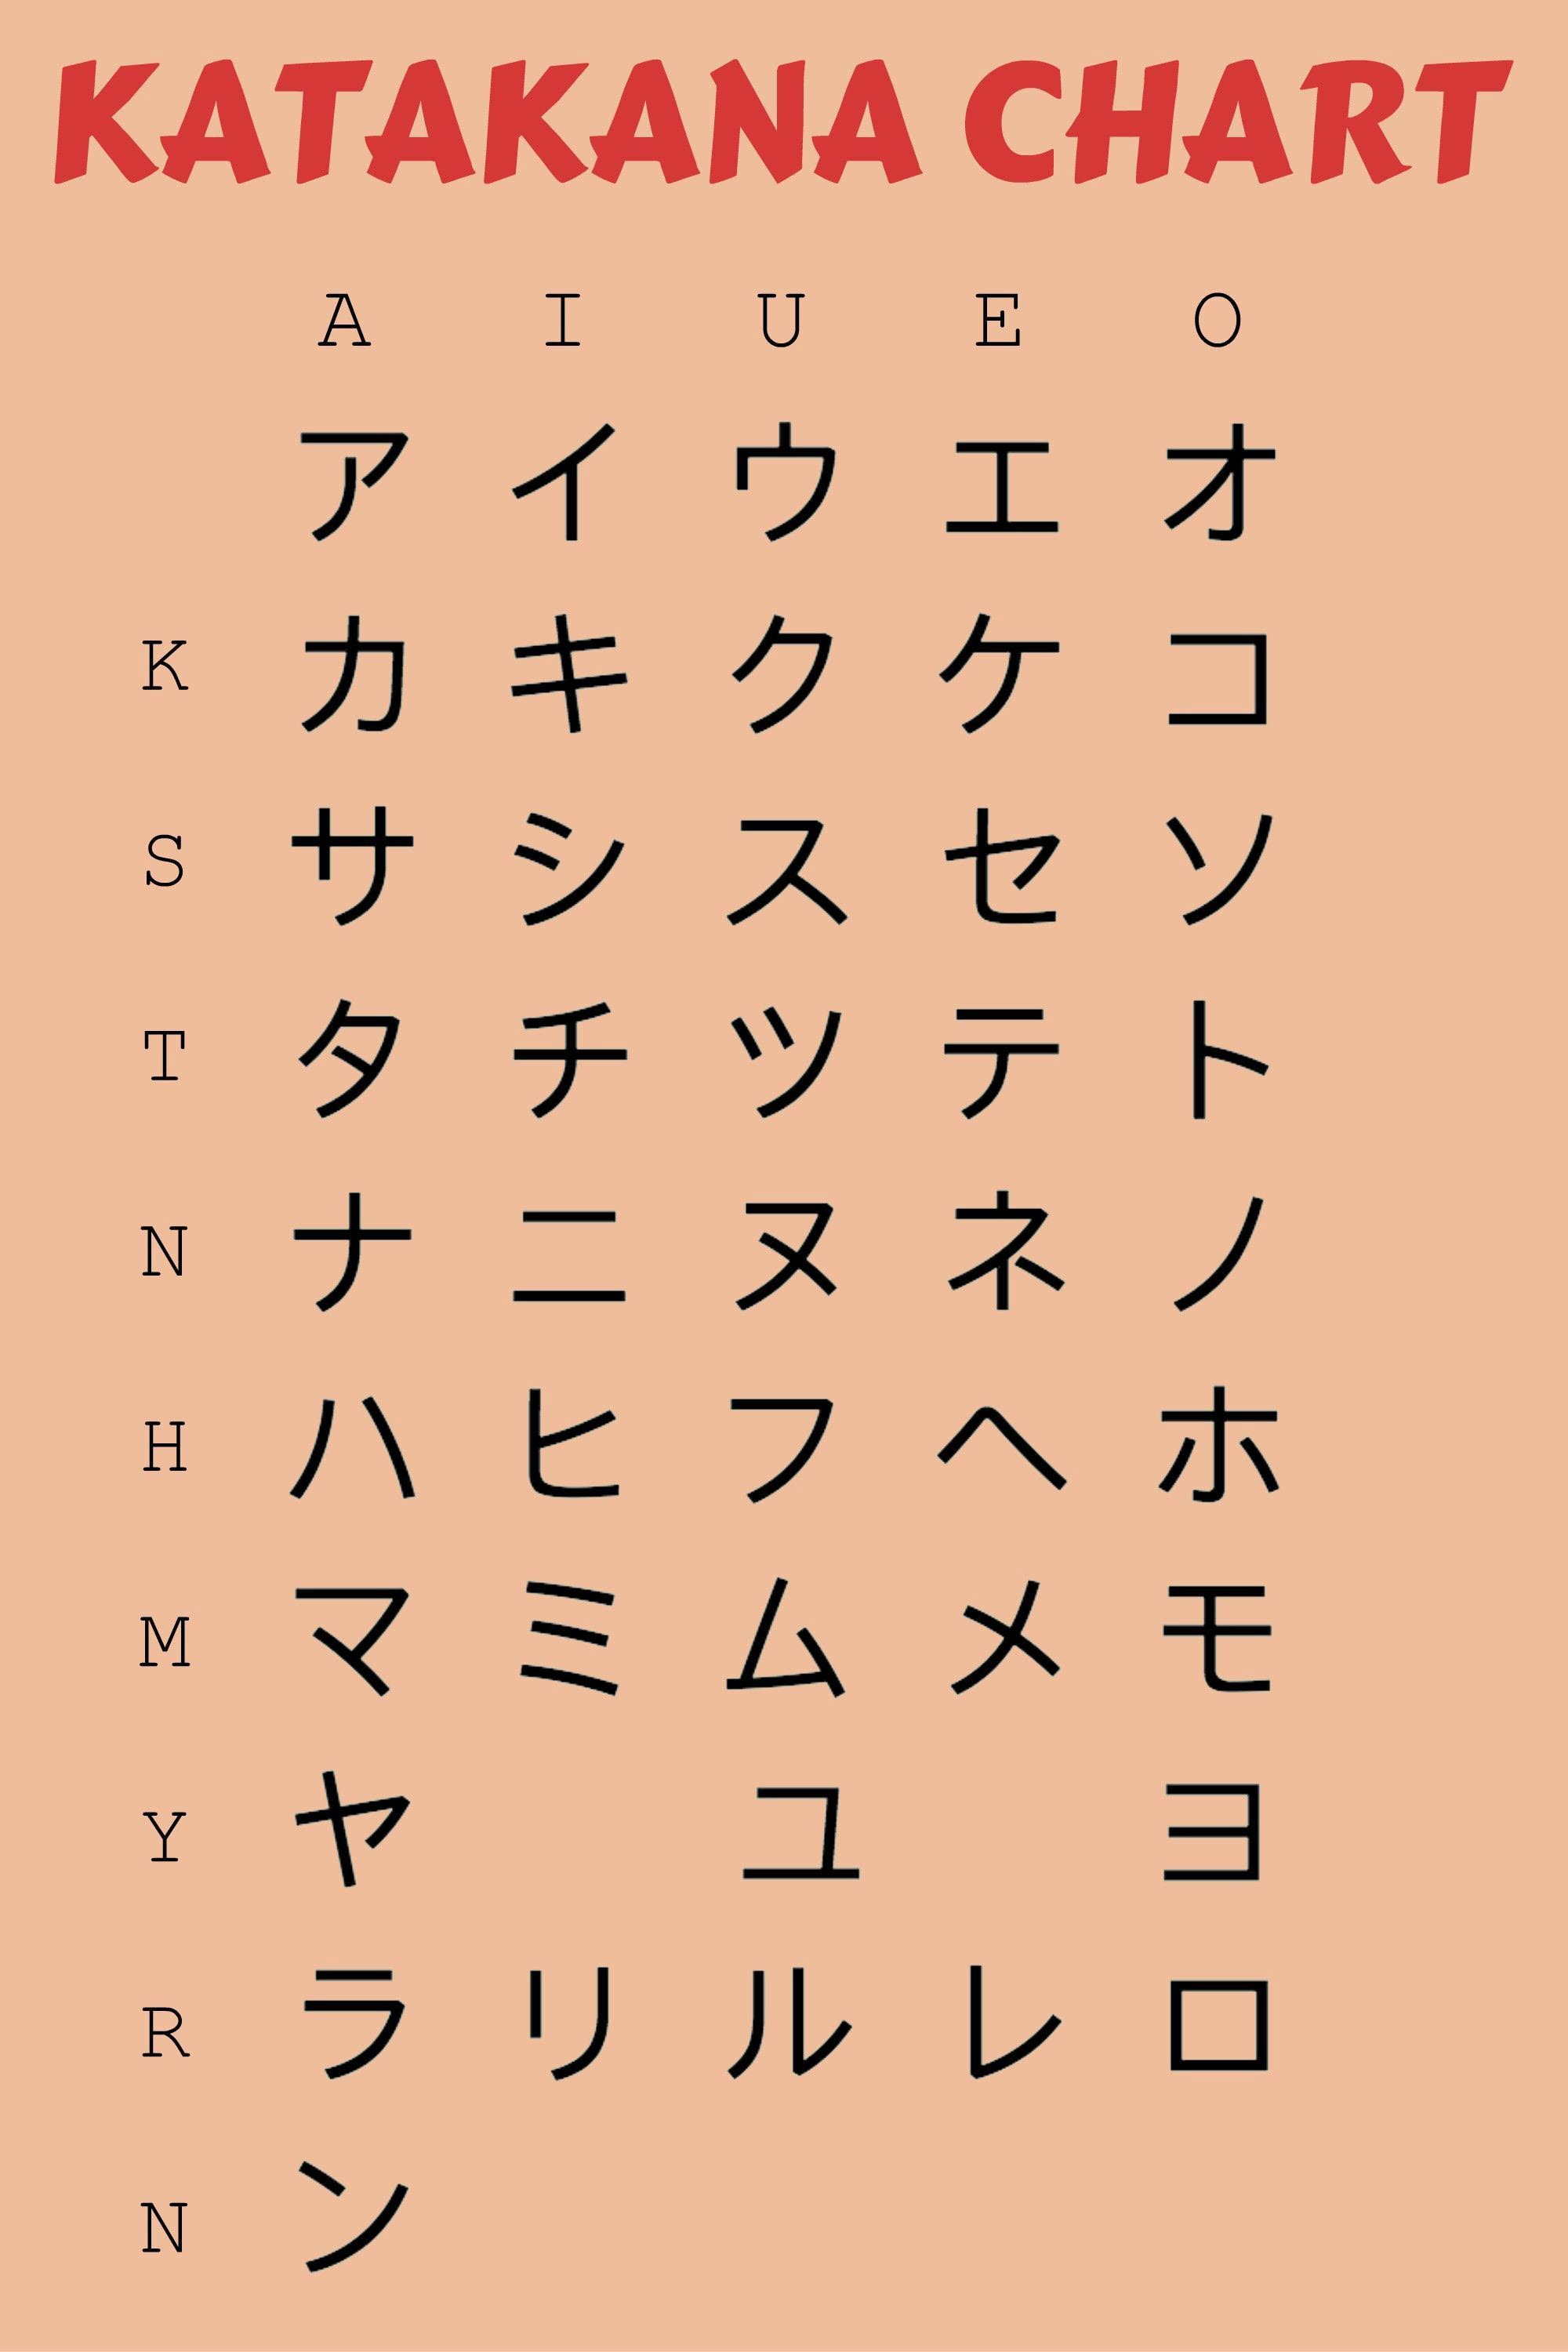 Bảng chữ cái Katakana tiếng Nhật đẹp đơn giản